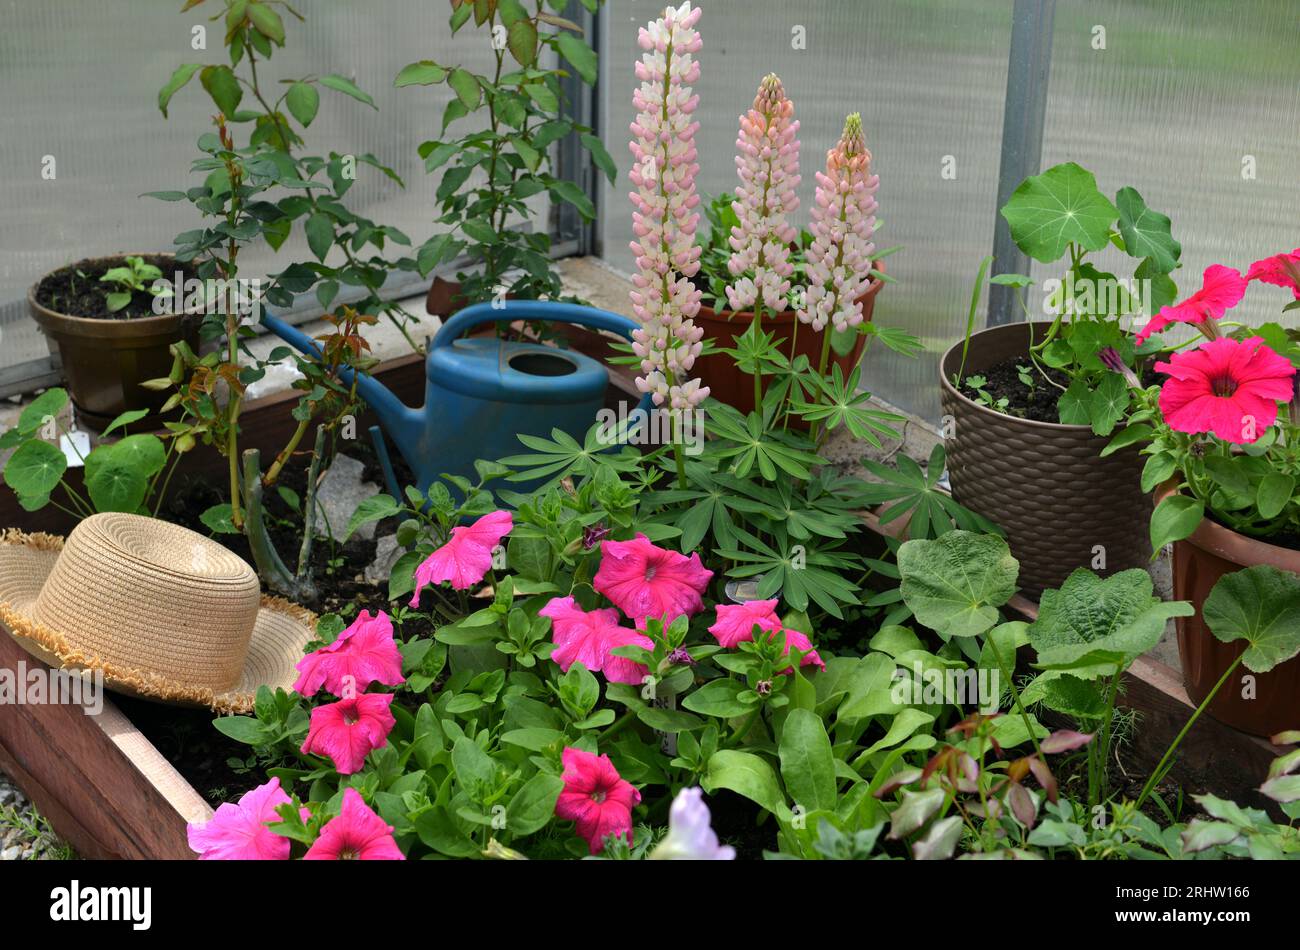 Wunderschöne Blumen aus rosa Lupinen und Petunien mit Hut und Gießkanne im Gewächshaus. Vintage-Haus Garten und Pflanzen Objekte, botanisches Stillleben W Stockfoto